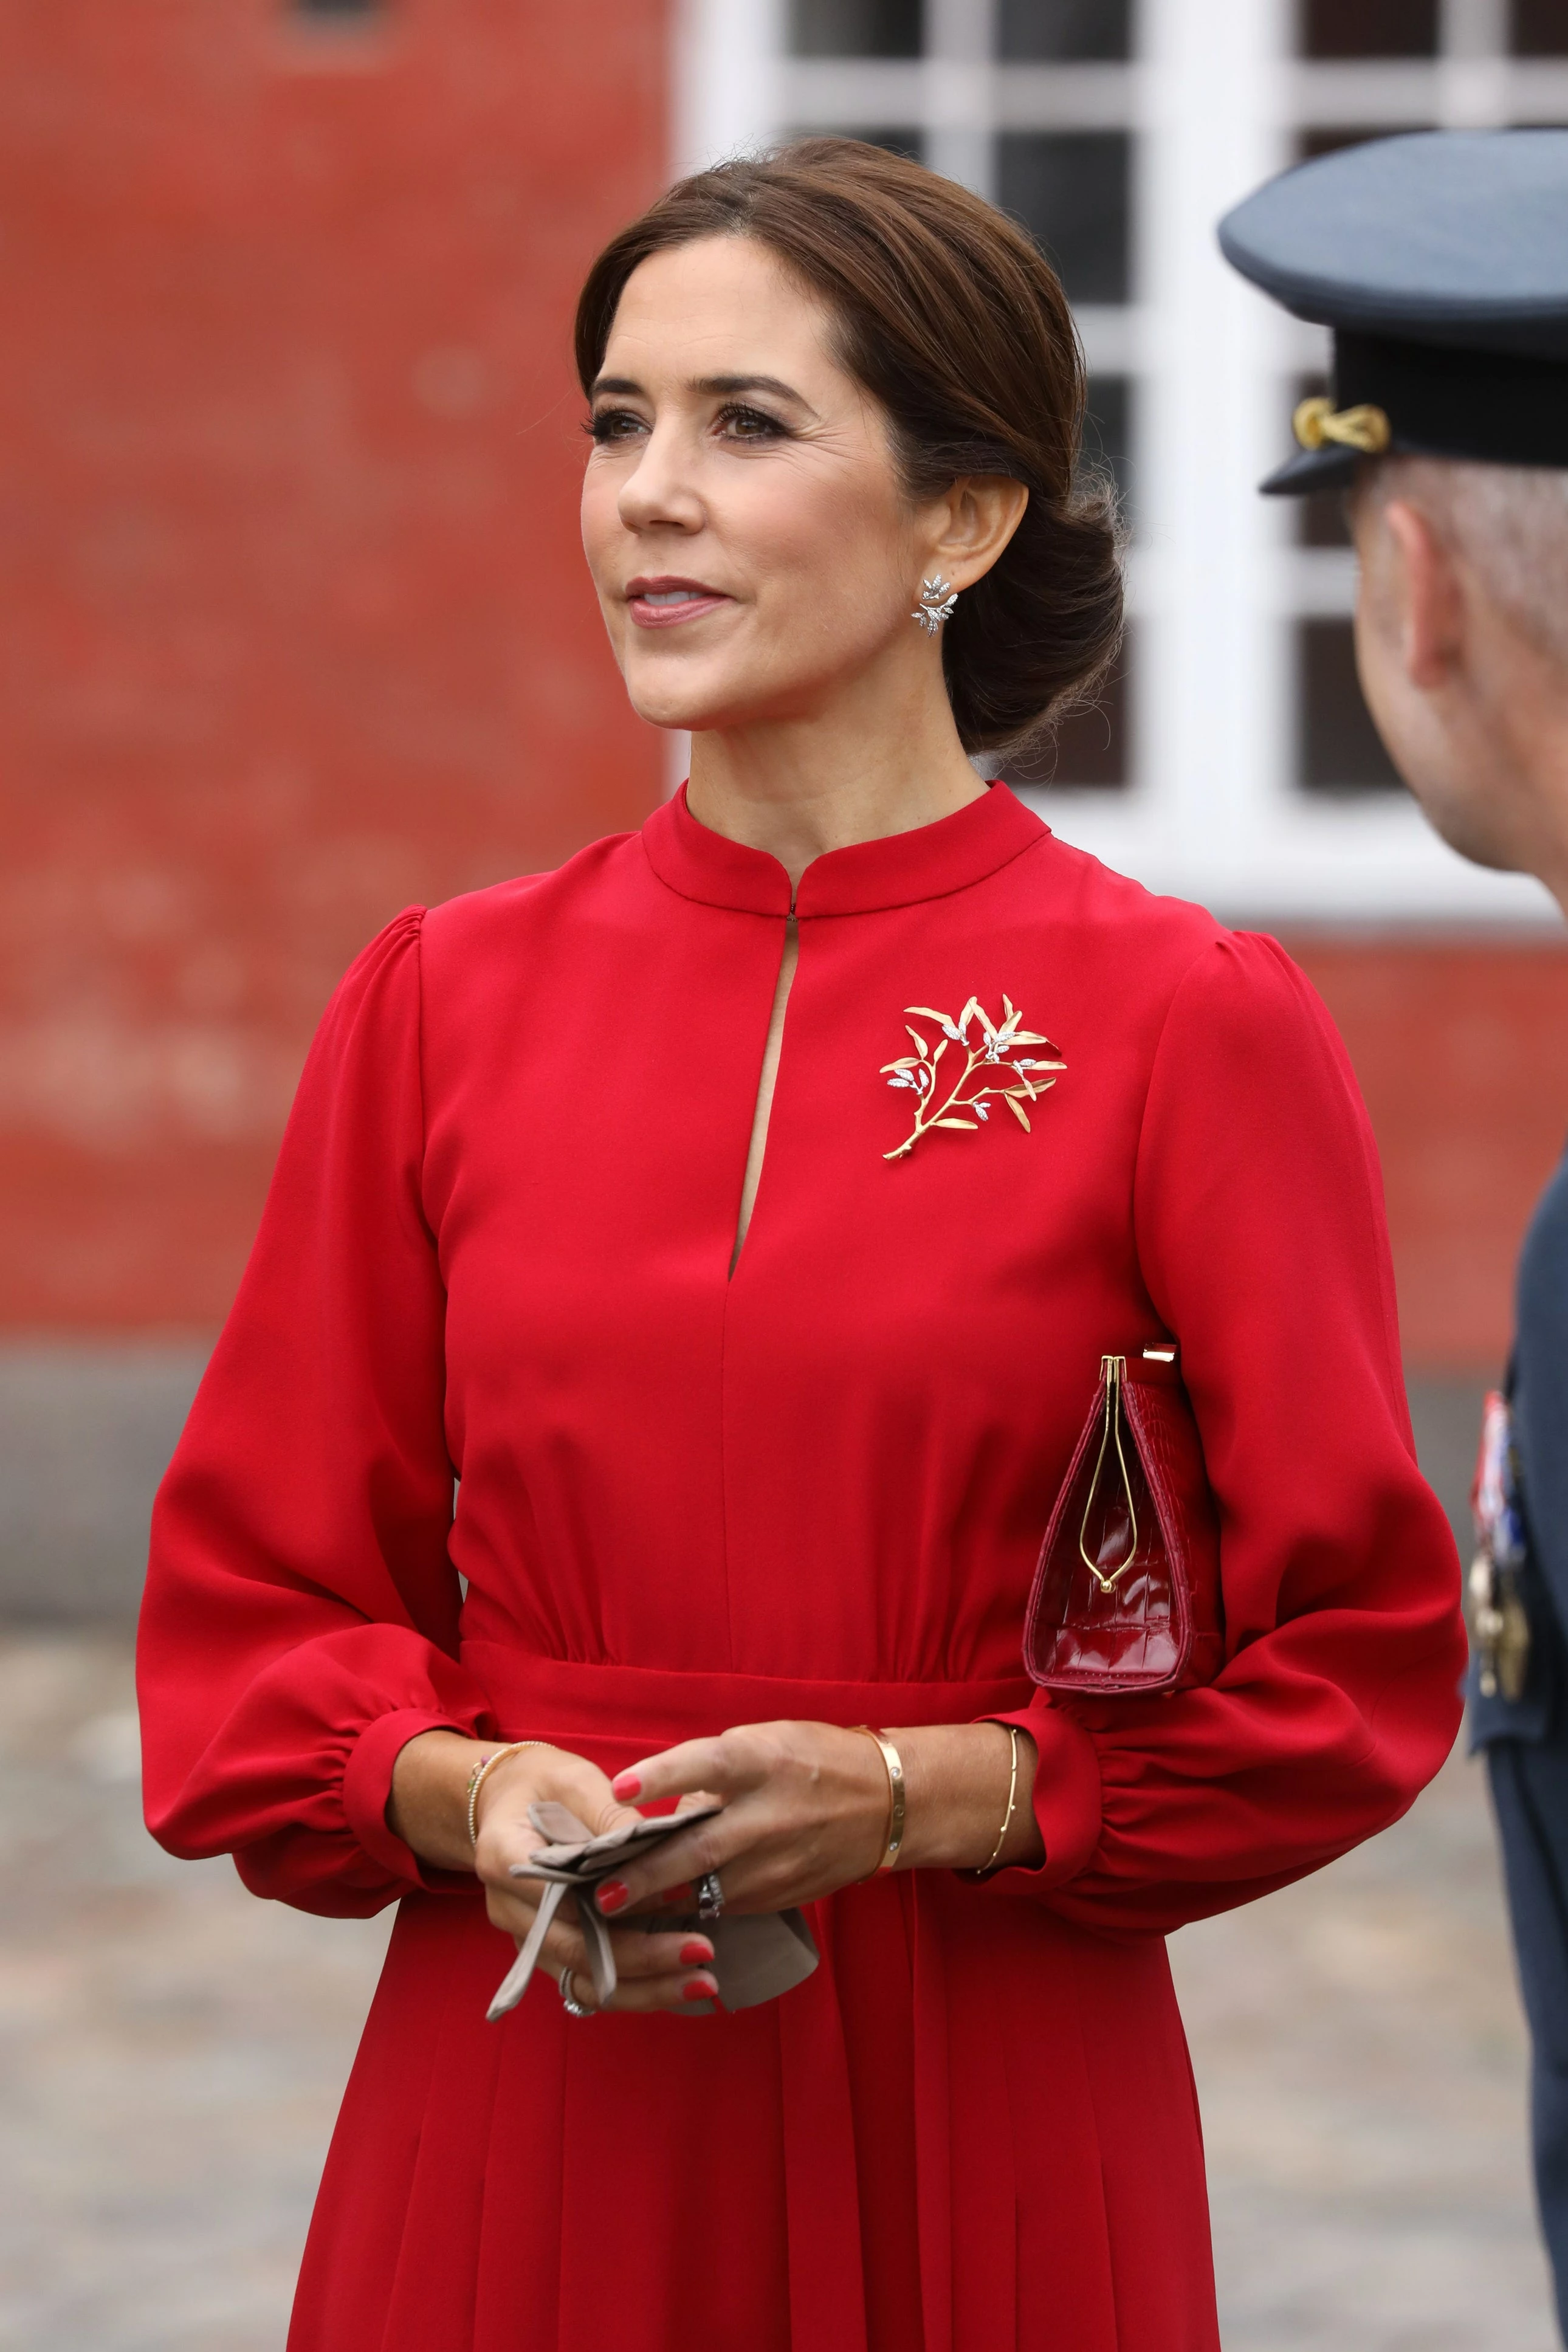 Серпень 2018 року  На церемонії покладання вінків у Копенгагені принцеса Марія одягла червону сукню.16